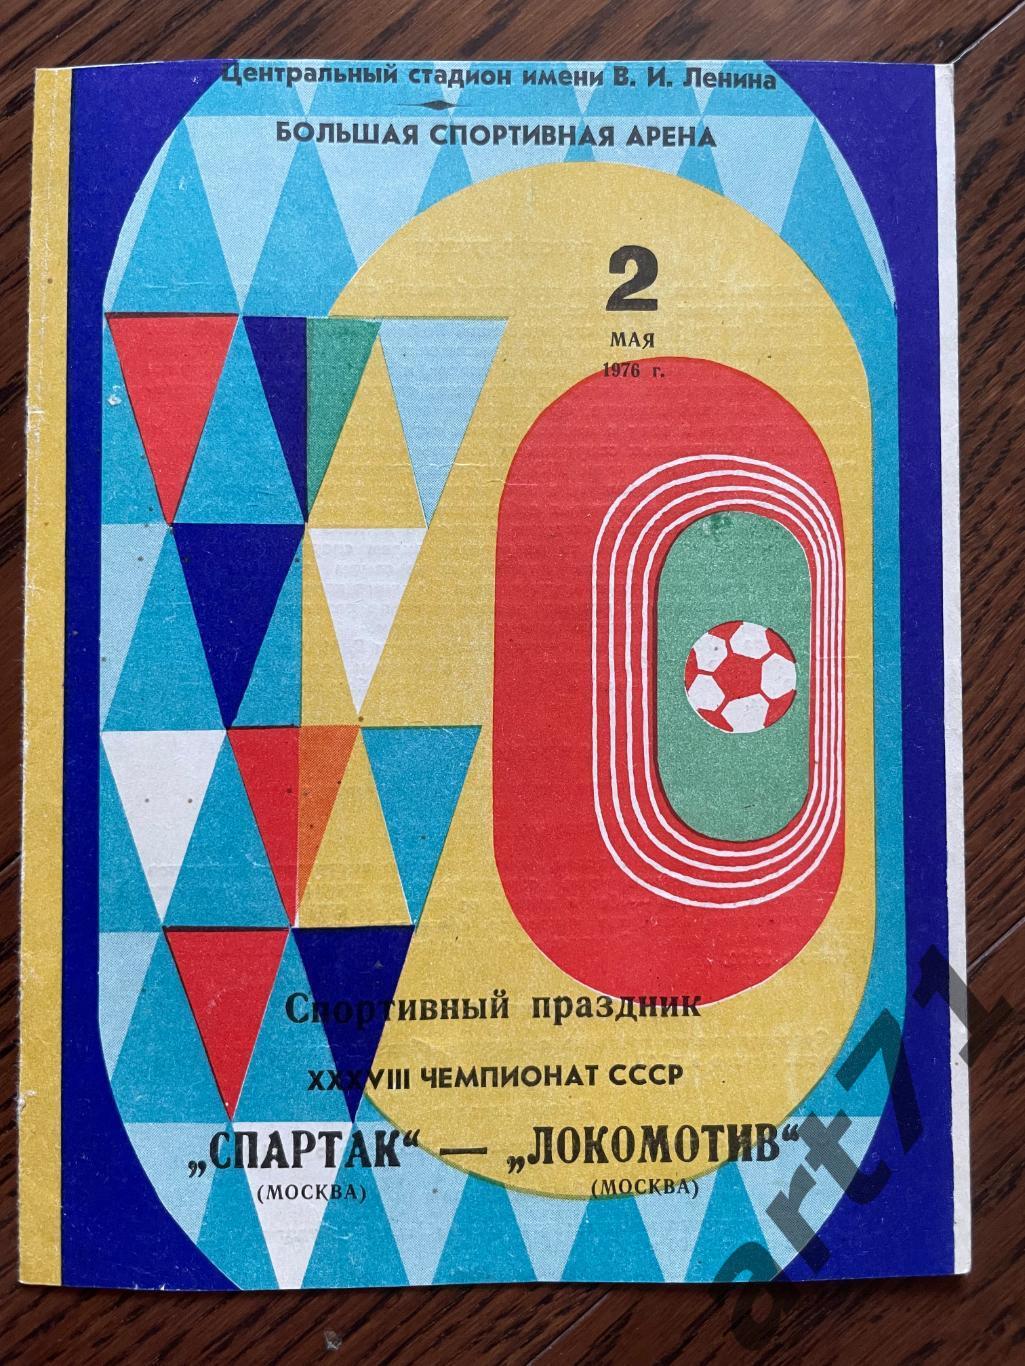 Спартак (Москва) - Локомотив (Москва) 1976